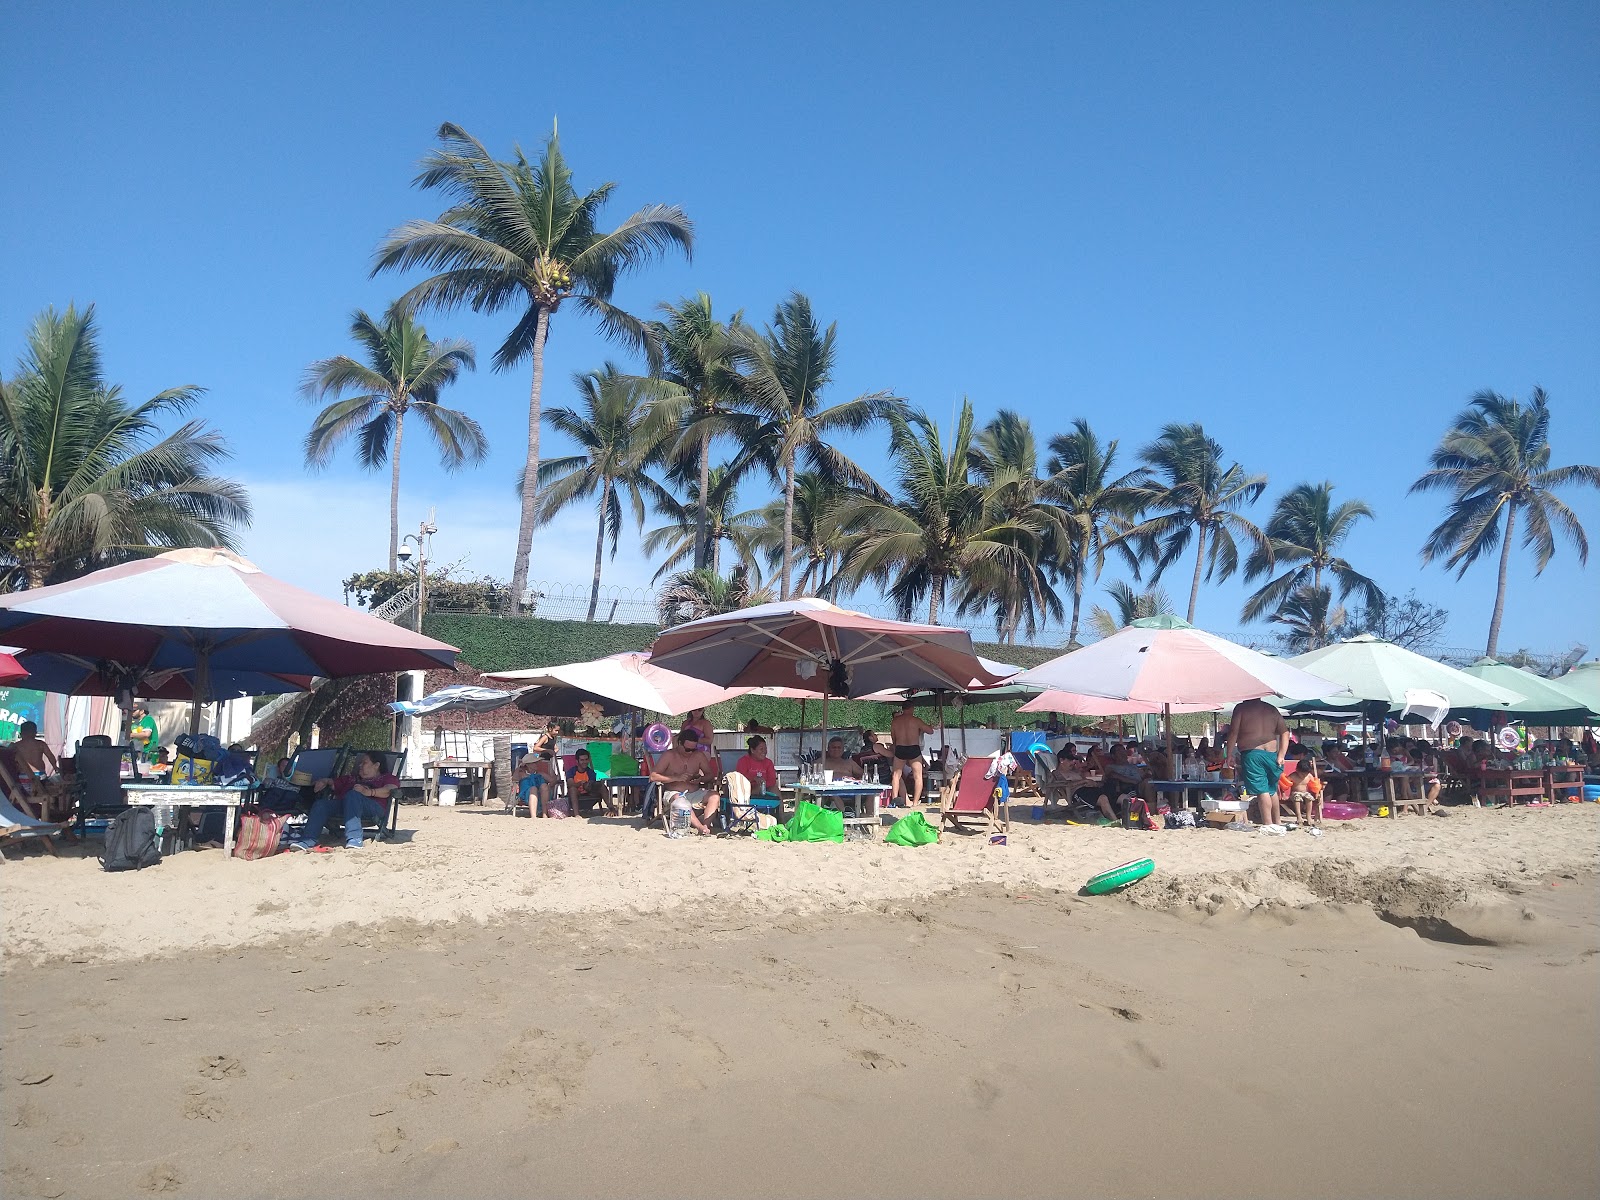 Playa Las Brisas'in fotoğrafı - rahatlamayı sevenler arasında popüler bir yer